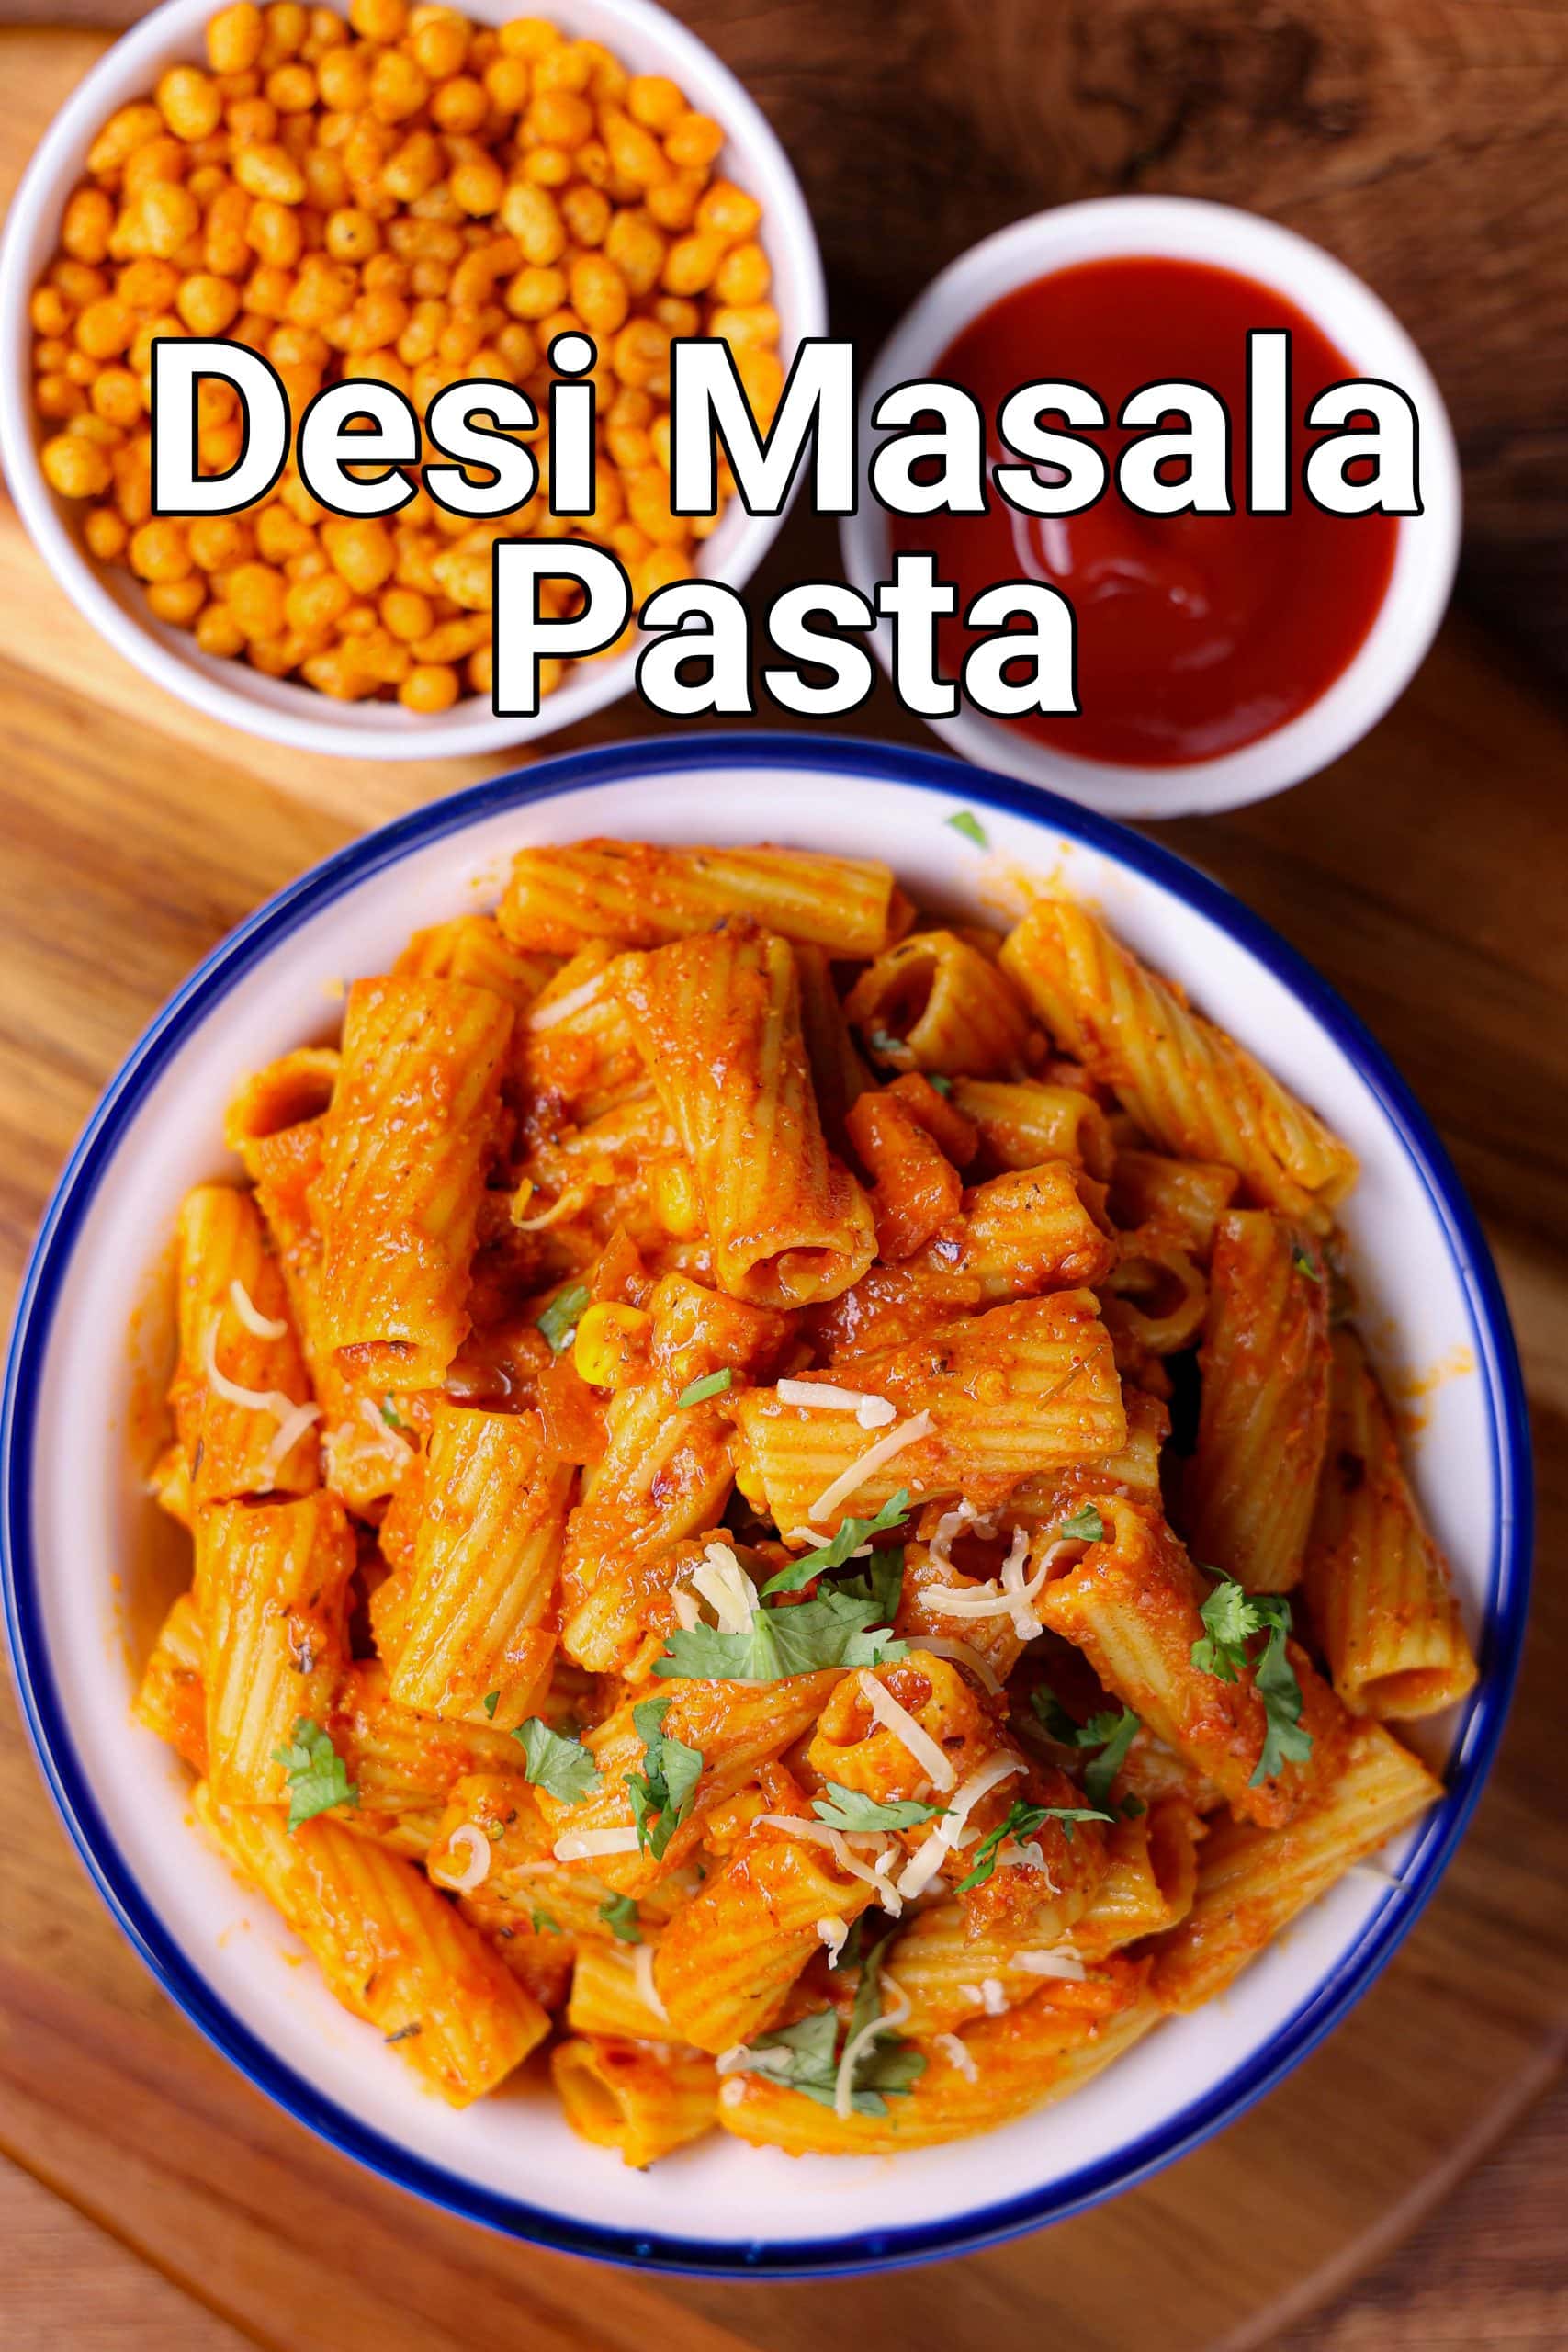 ಮಸಾಲಾ ಪಾಸ್ತಾ ರೆಸಿಪಿ | masala pasta in kannada | ಭಾರತೀಯ ಶೈಲಿ ಪಾಸ್ತಾ